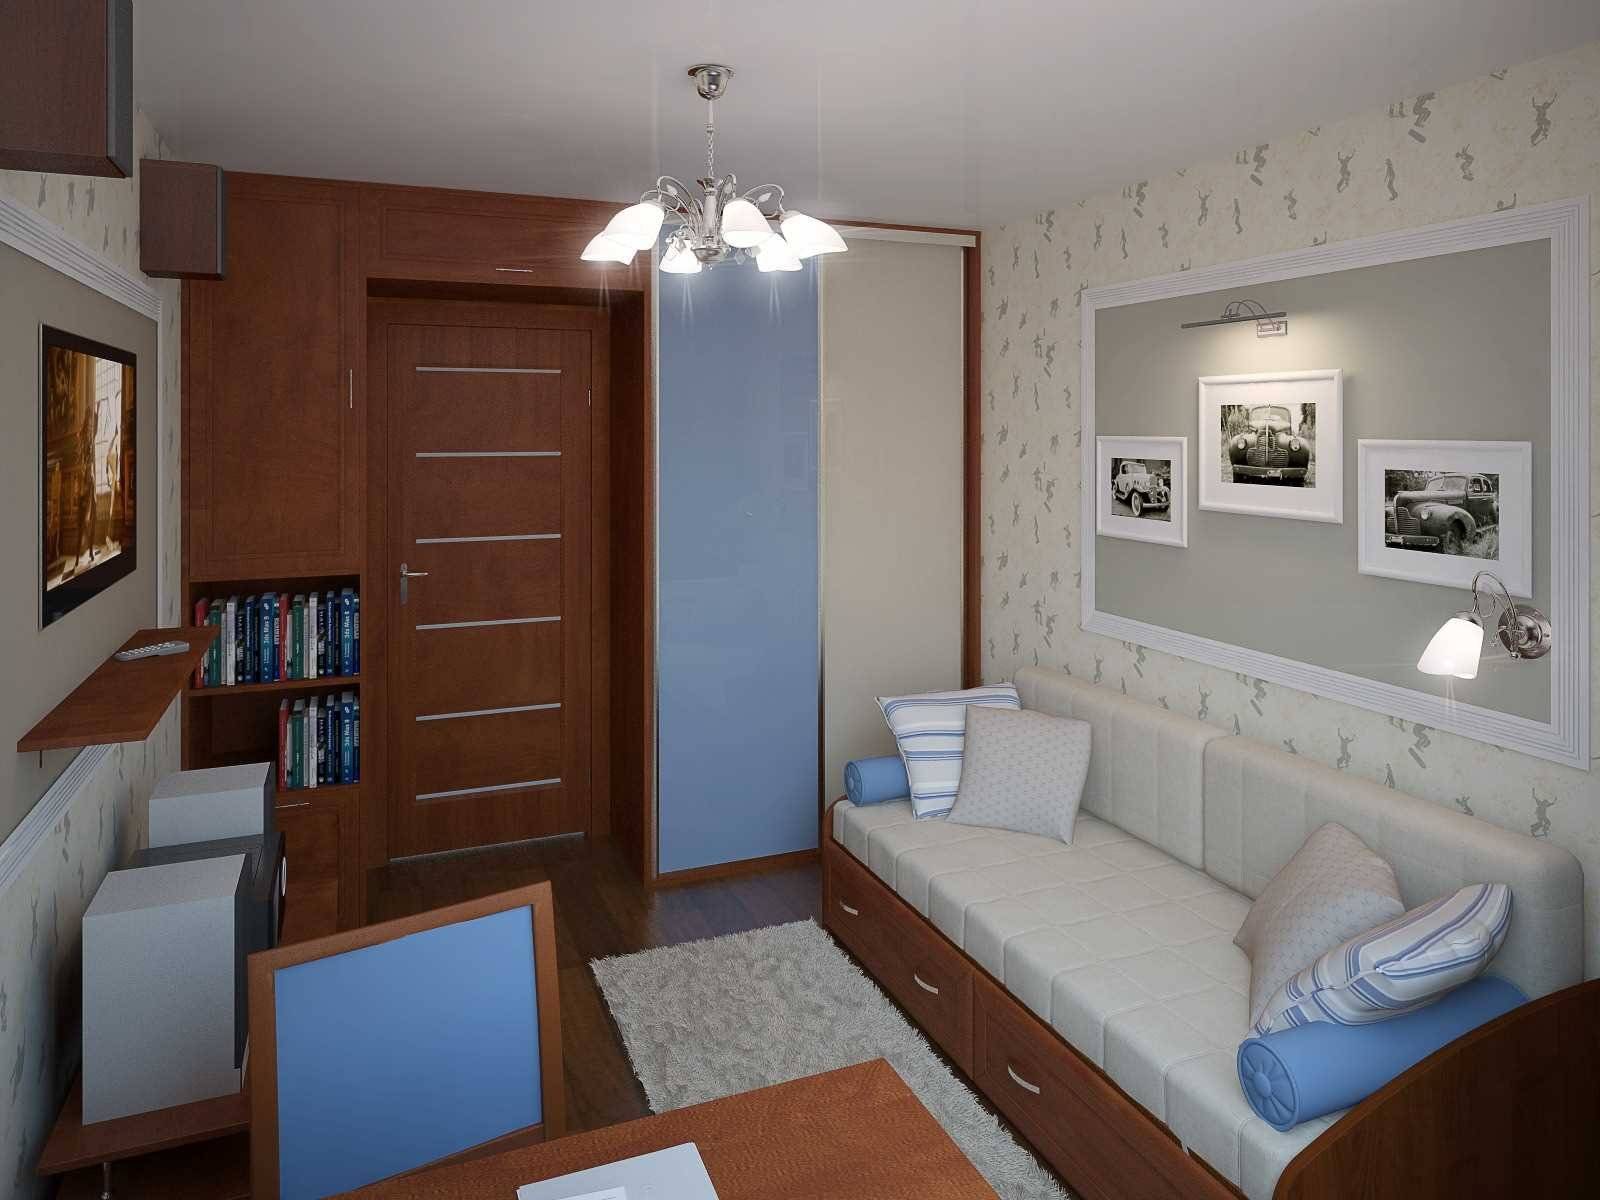 Спальня 12 кв. м. - новинки дизайна в современном стиле оформления. фото с советами по выбору цветовой гаммы, планировки и освещения